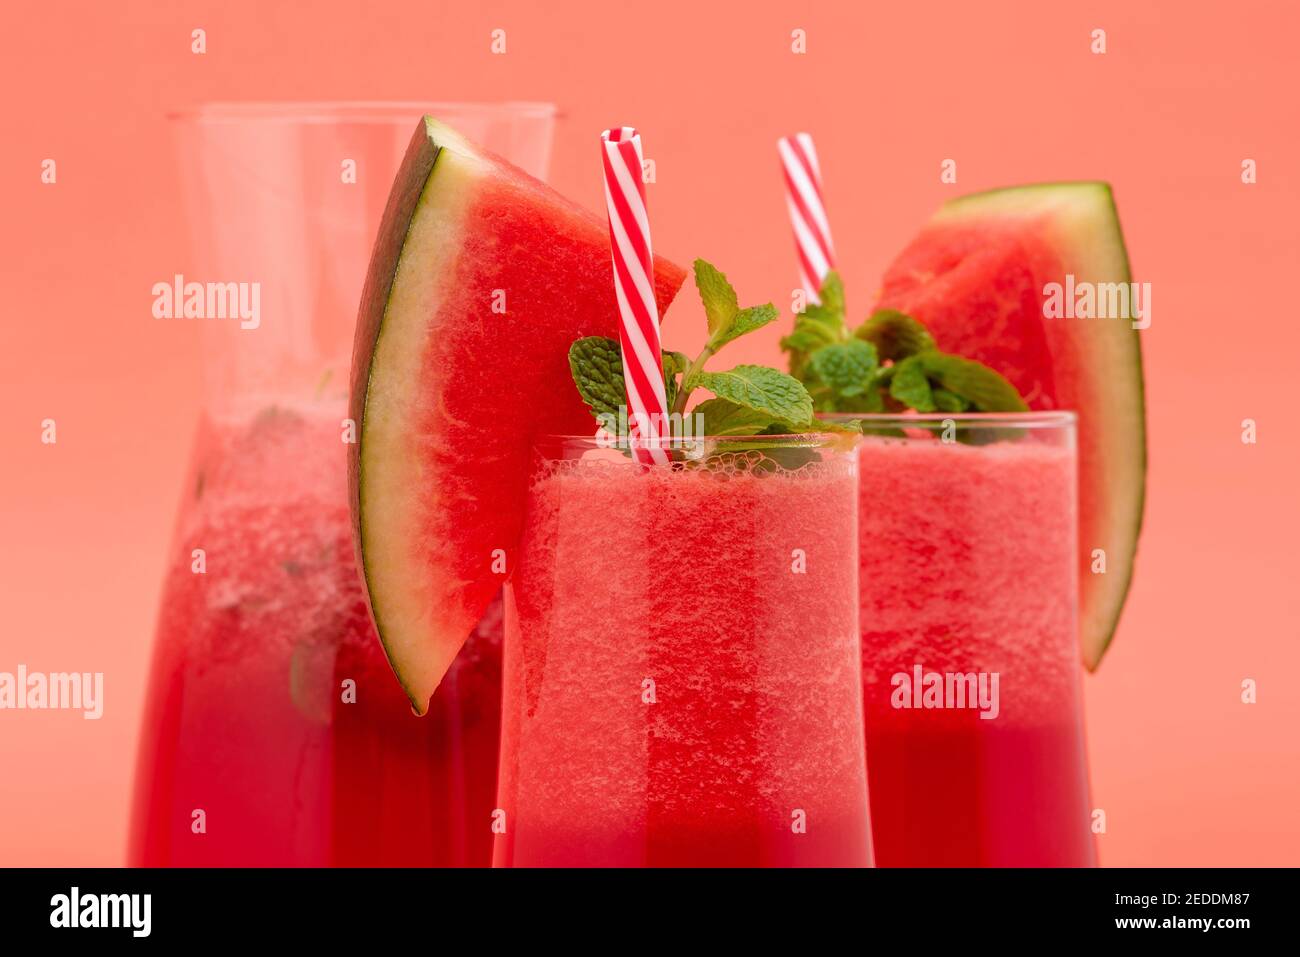 Erfrischende kalte Wassermelone Fruchtsaft Smoothies Getränke in den Gläsern Auf korallenrosa Hintergrund Stockfoto